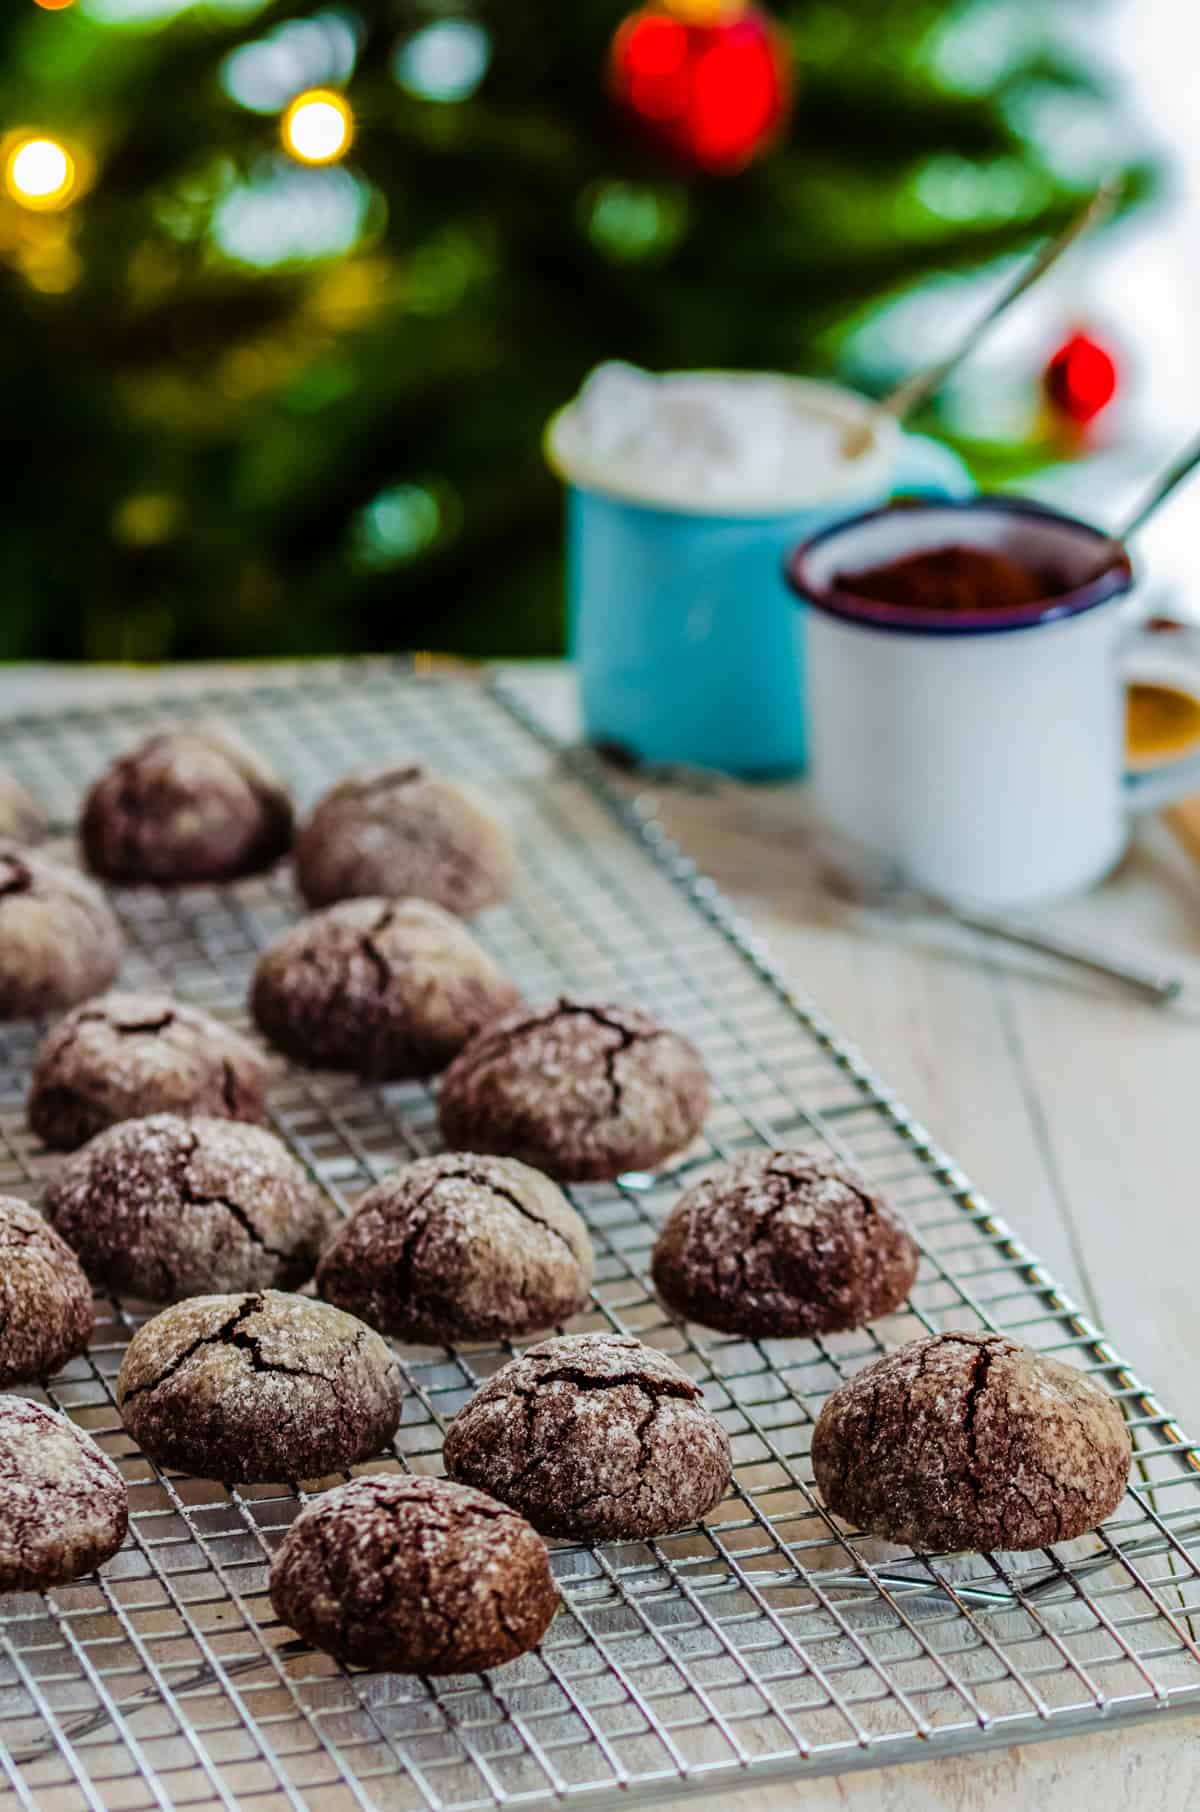 Schoko-Crinkle-Cookies mit Puderzucker auf Kuchengitter mit Weihnachtsbaum im Hintergrund